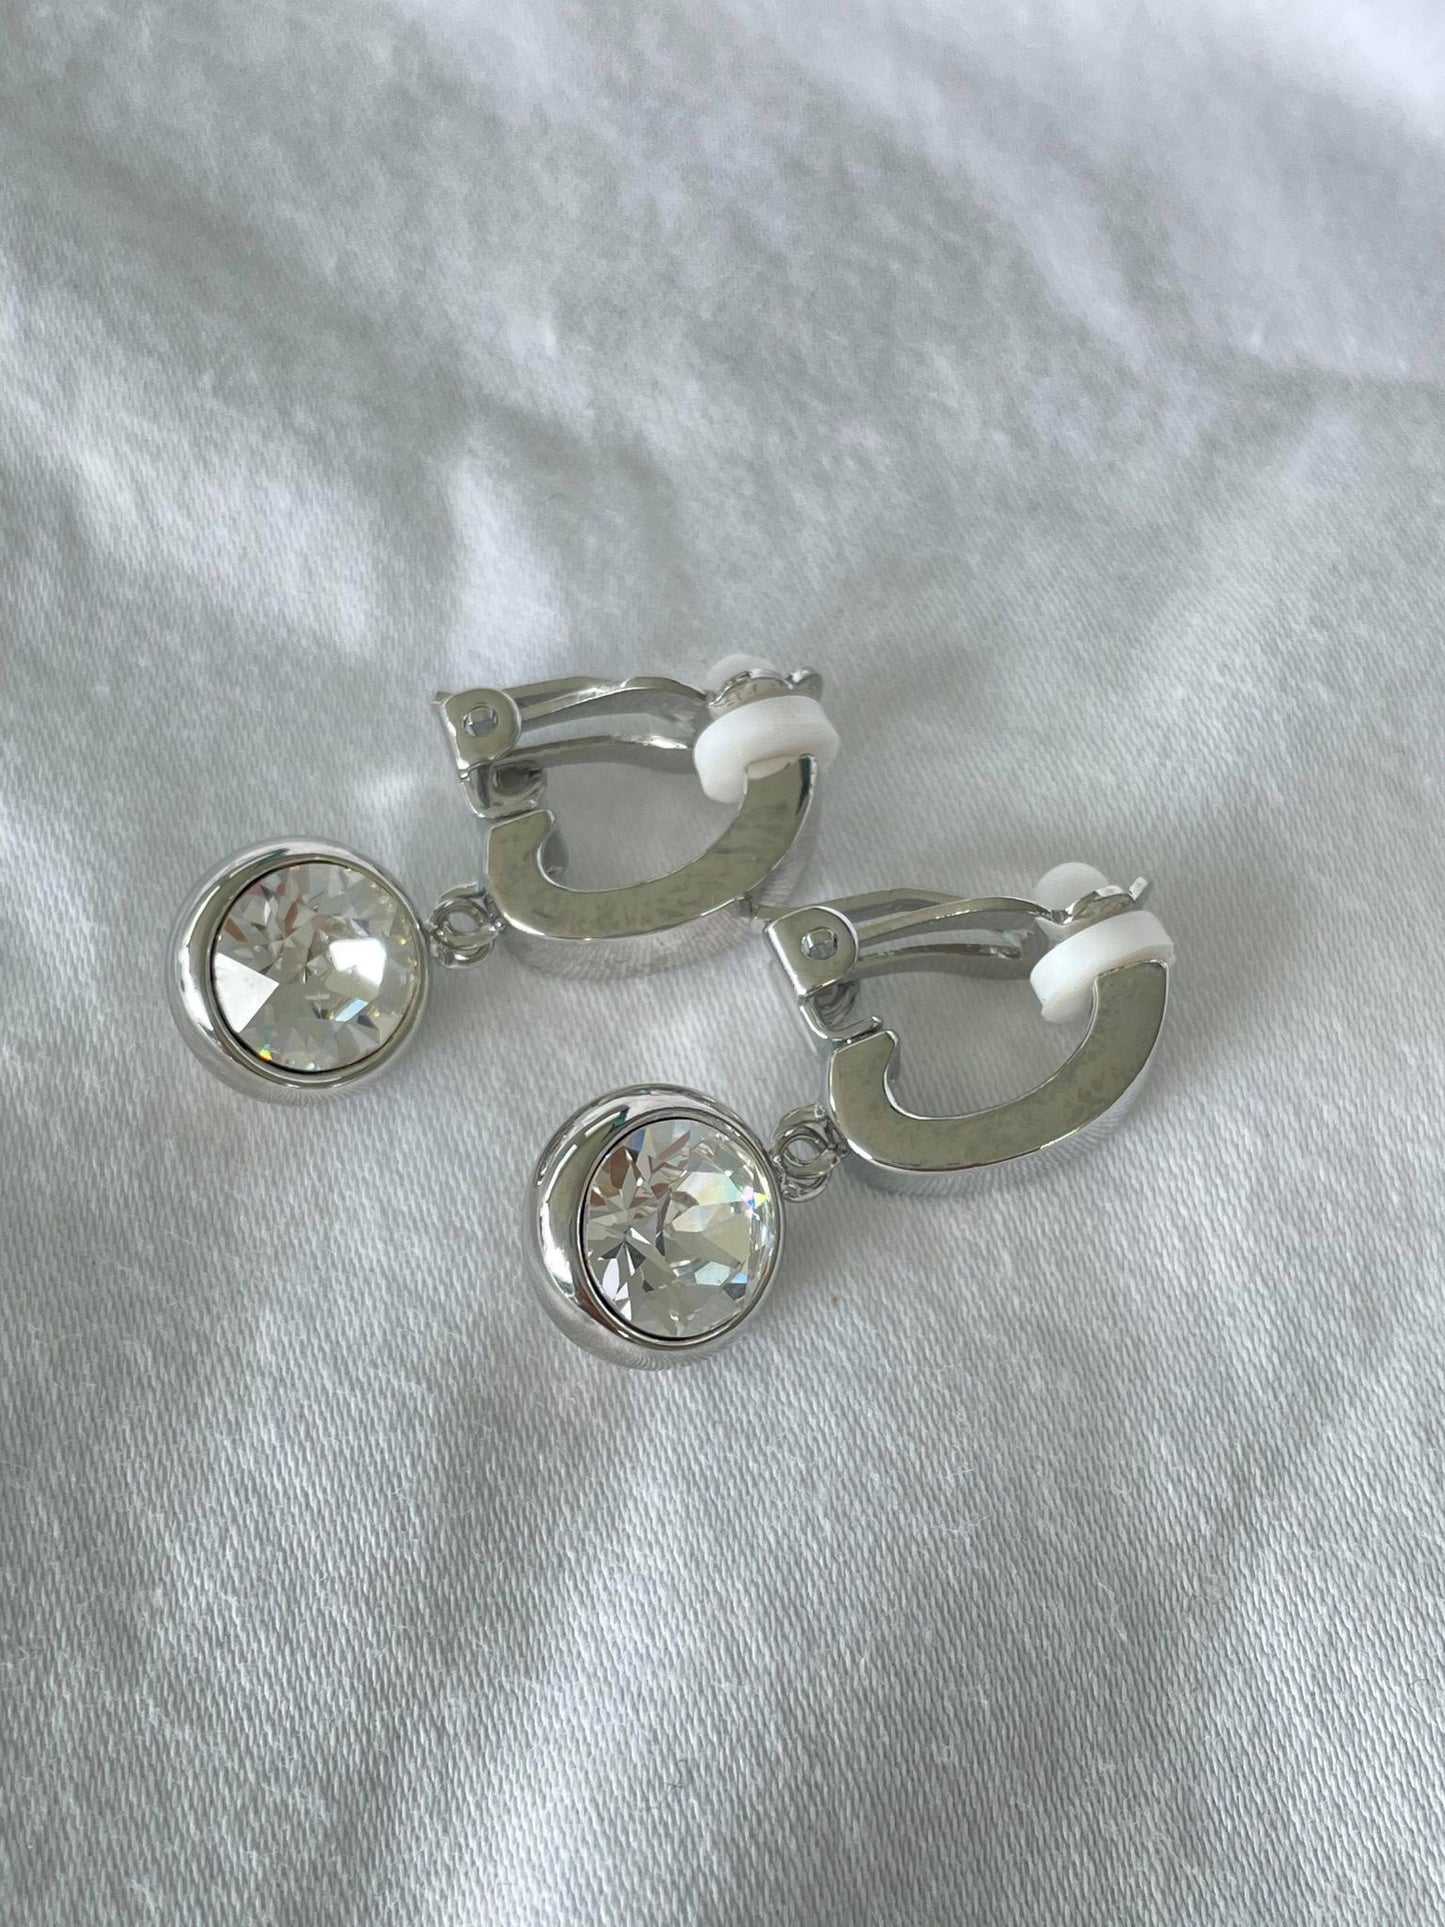 Single crystal doorknocker clip on earring